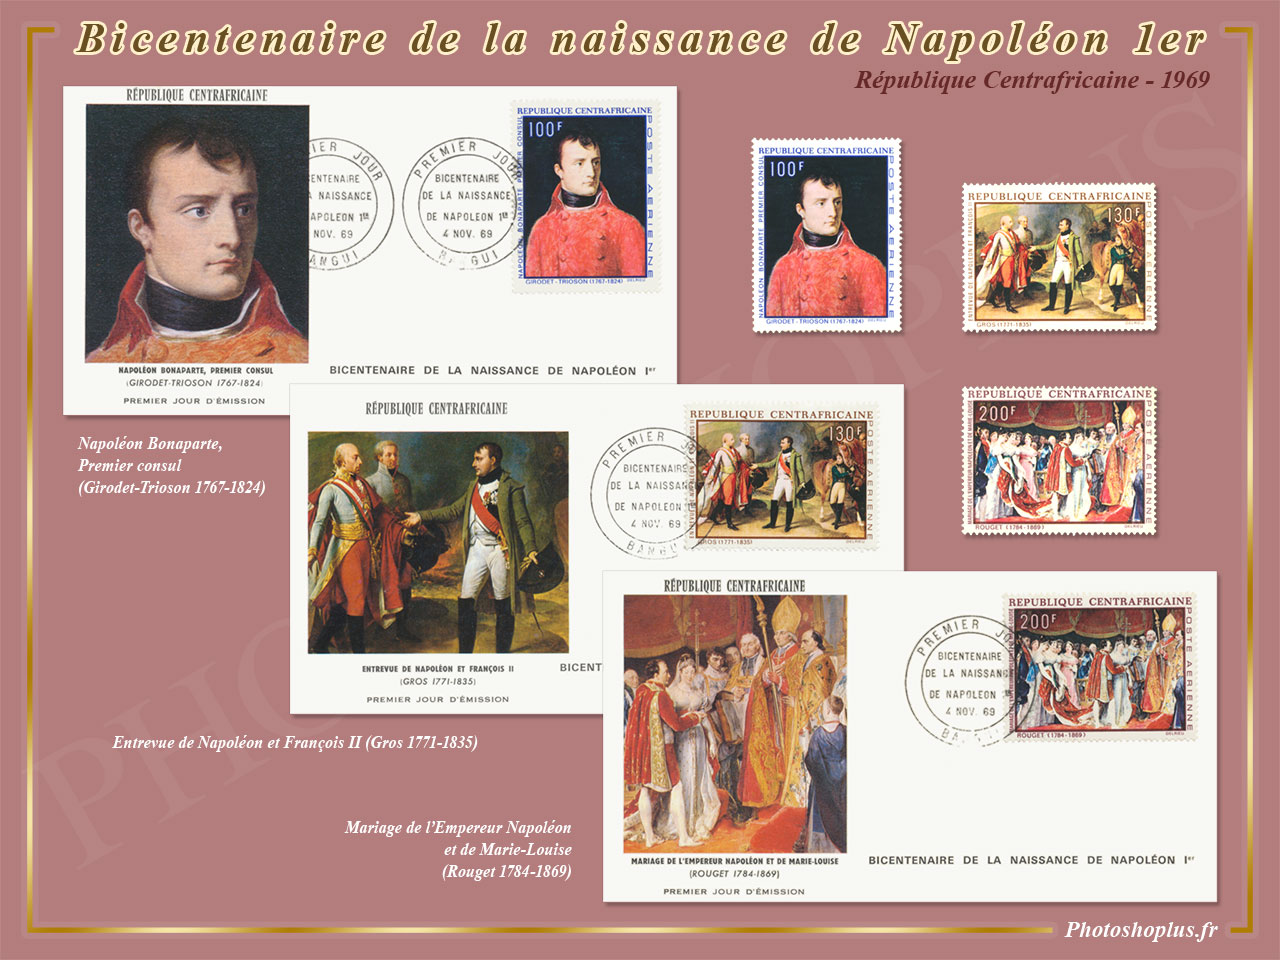 Bicentenaire de la naissance de Napoléon 1er